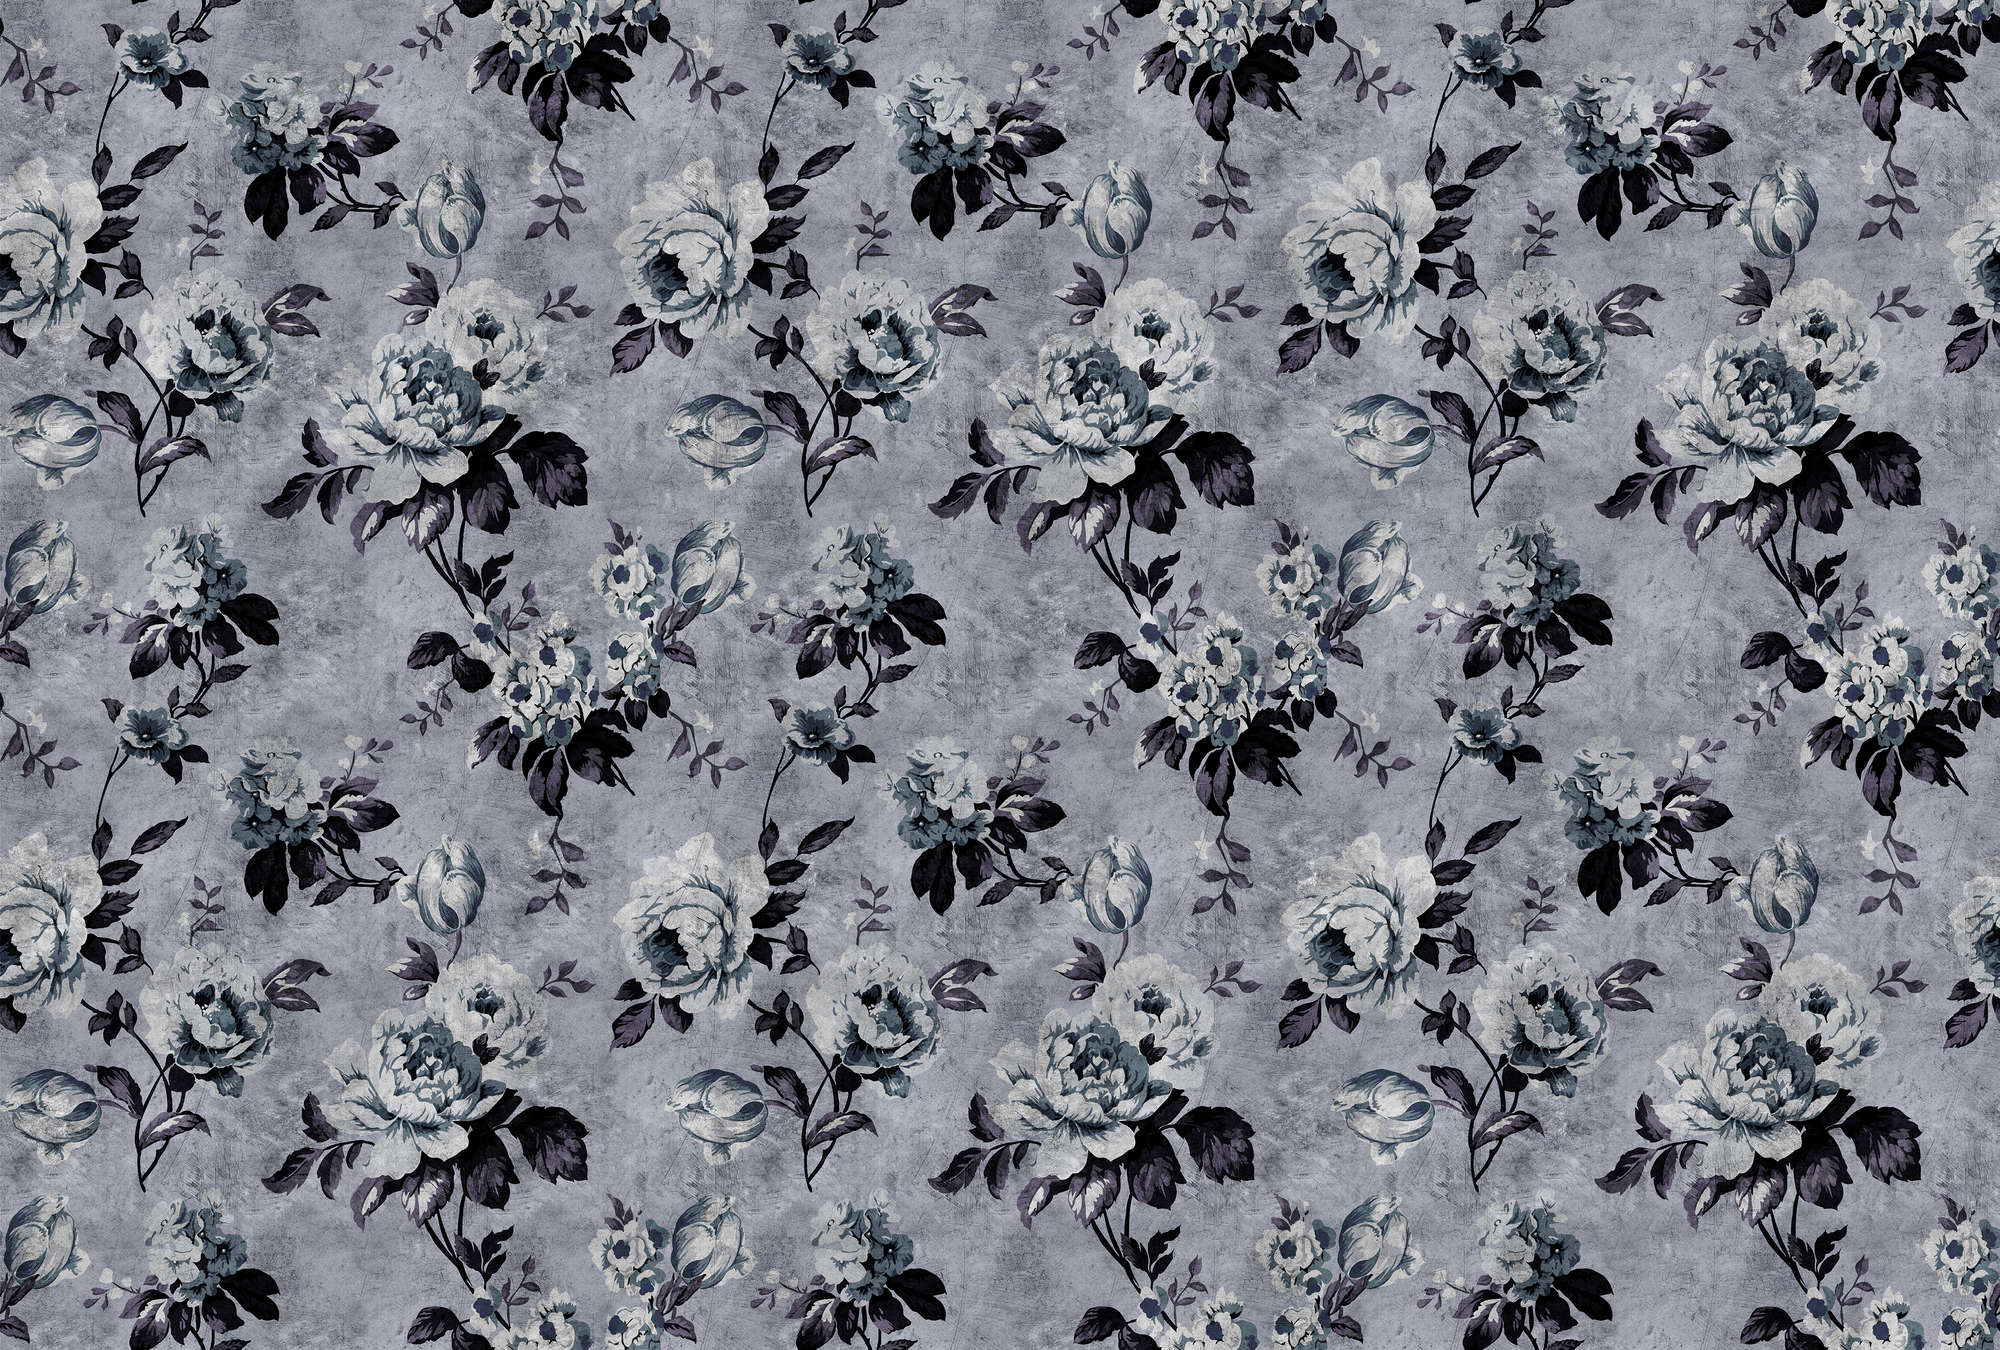             Wilde rozen 6 - Rozen behang in retro look, grijs in krasstructuur - Blauw, Violet | Pearl glad vlies
        